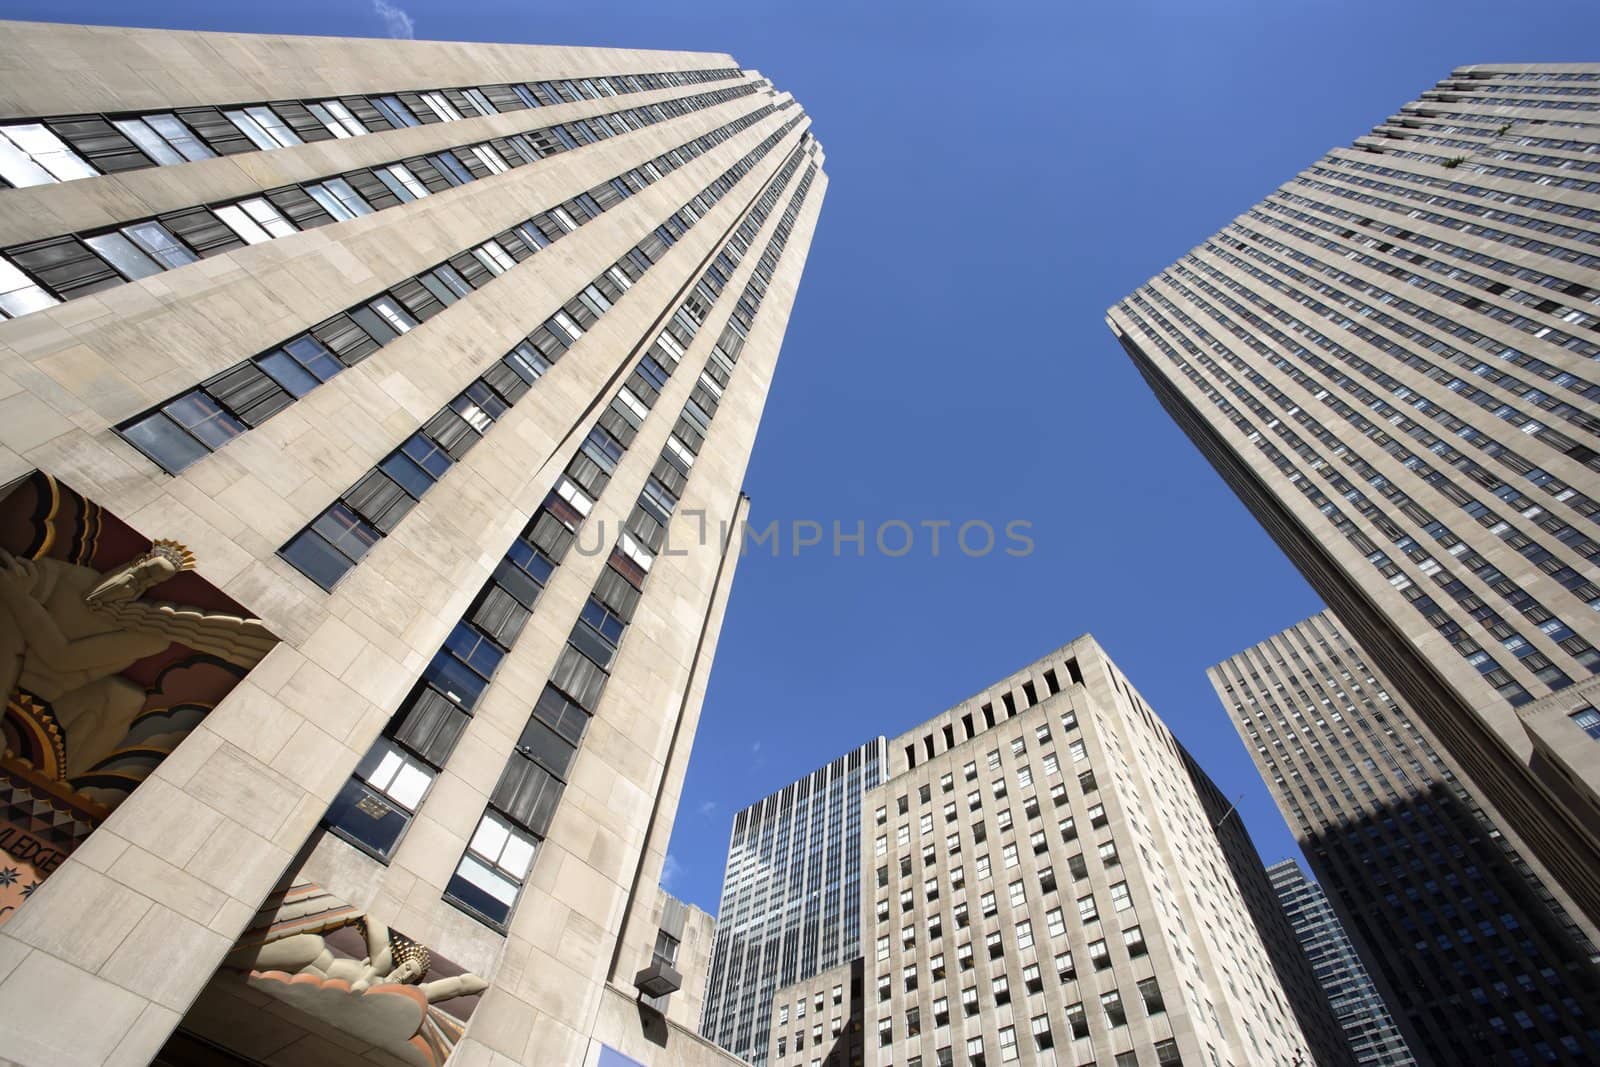 Rockefeller Plaza skyscrapers by sumners